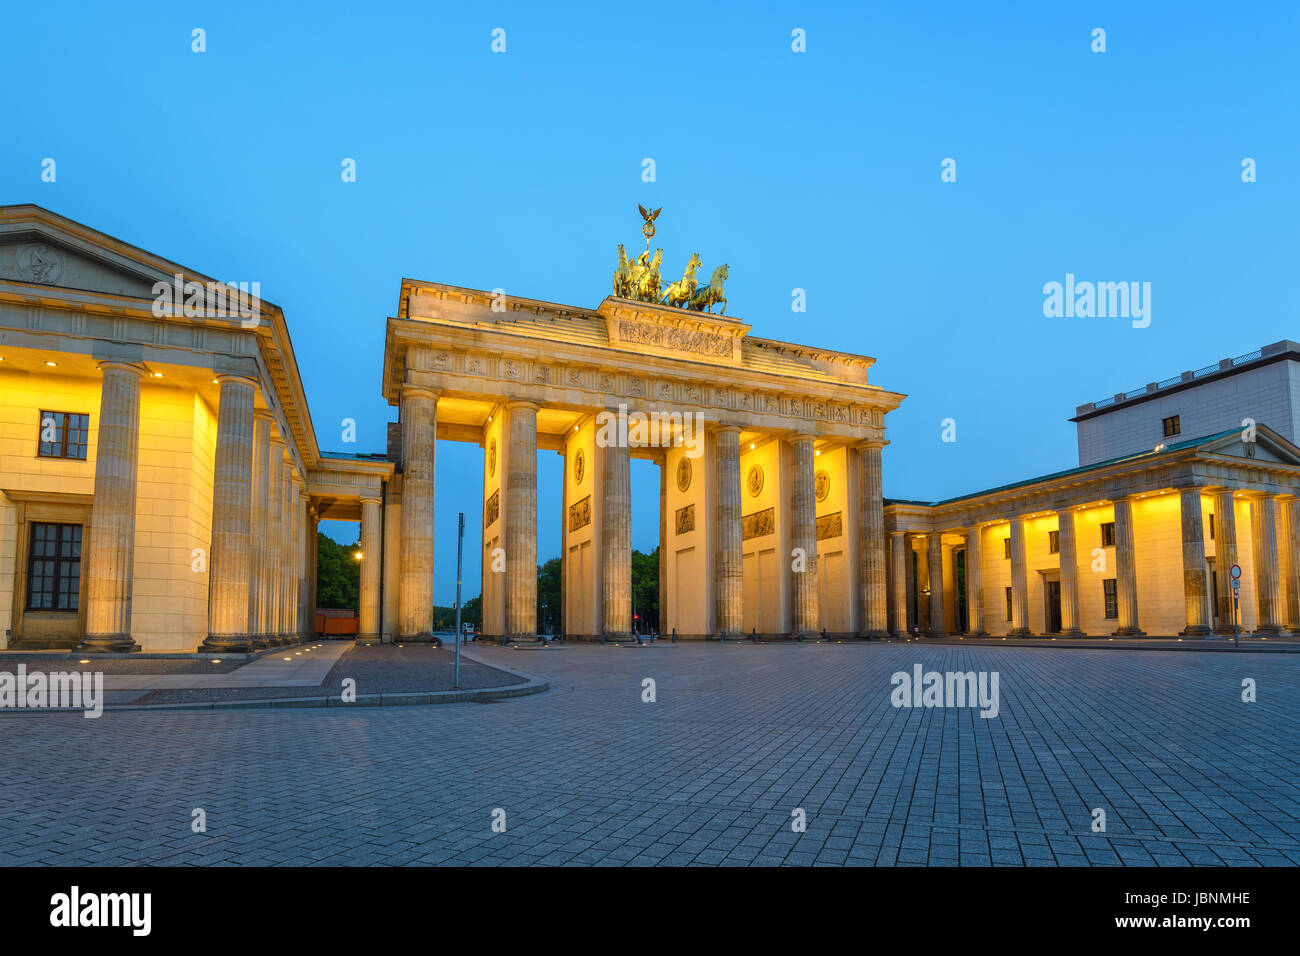 Porte de Brandebourg (Brandenburger Tor) la nuit, Berlin, Allemagne Banque D'Images